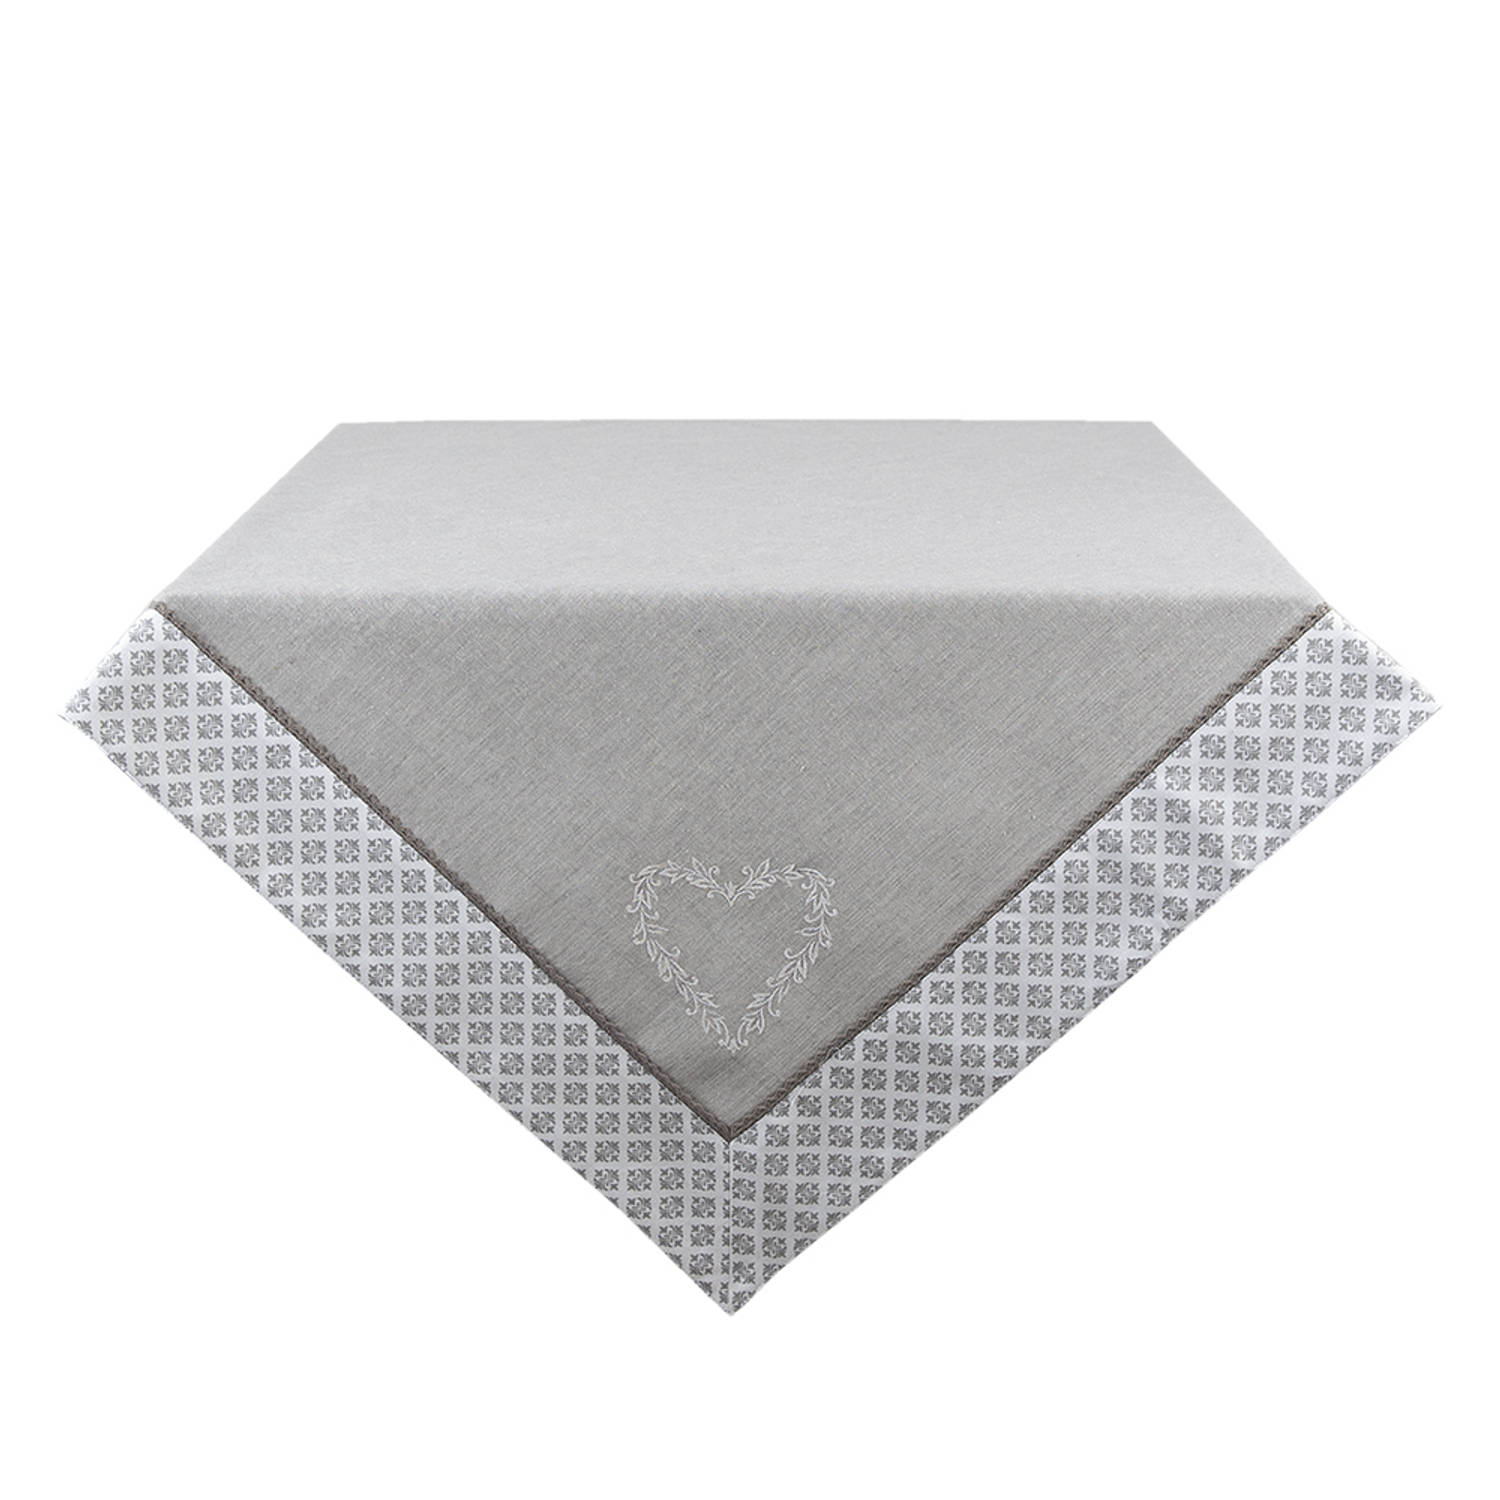 HAES DECO - Vierkant Tafellaken - formaat 150x150 cm - kleuren Grijs / Wit - van 100% Katoen - Collectie: Lovely Heart - Tafellaken, Tafellinnen, Tafeltextiel